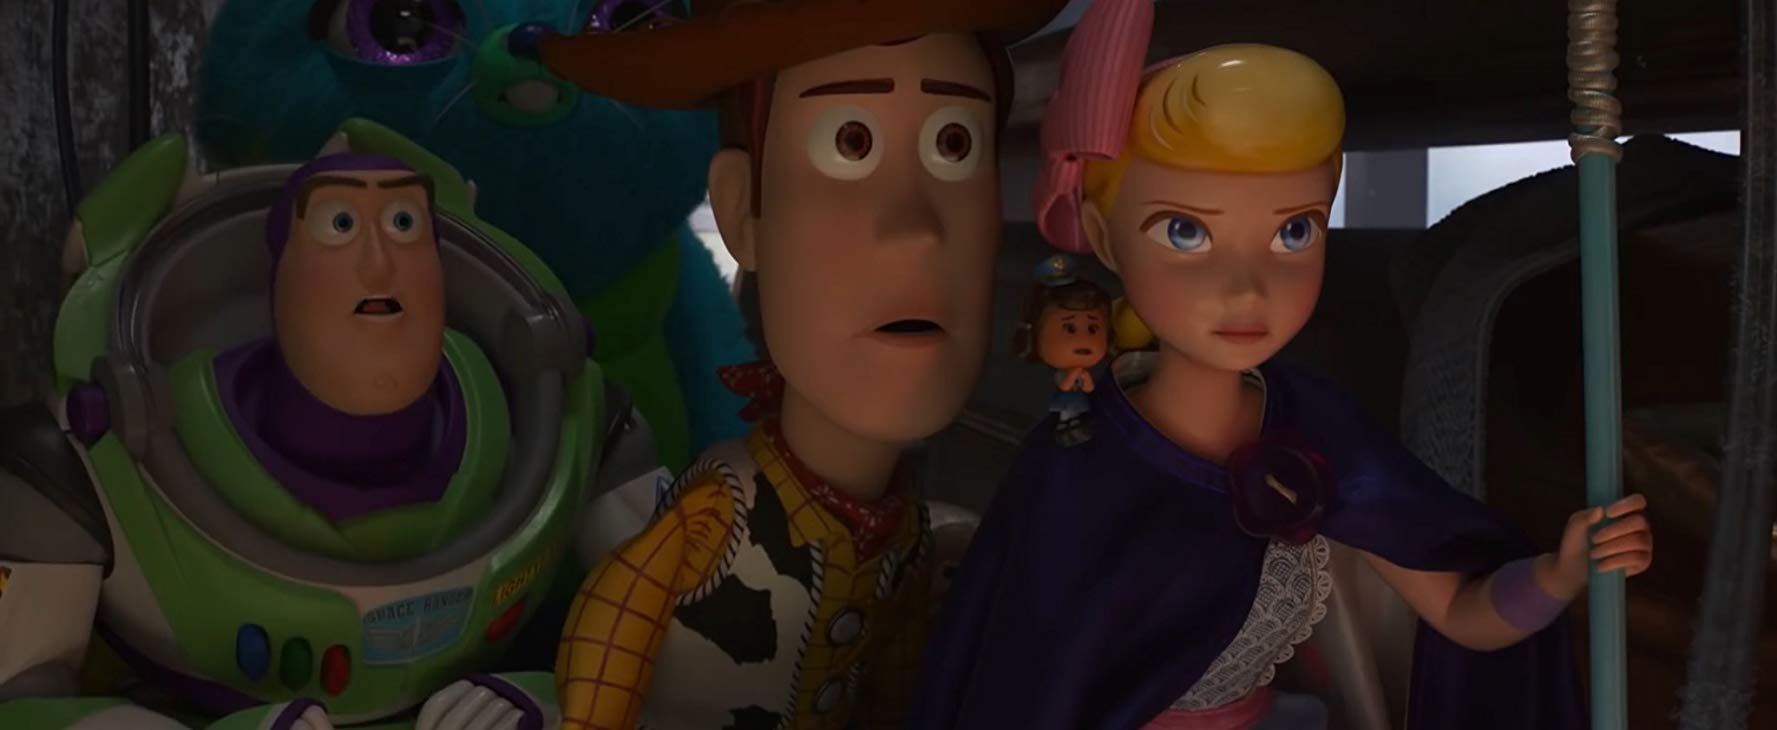 Kino Przyjazne Sensorycznie: Toy Story 4 - dubbing